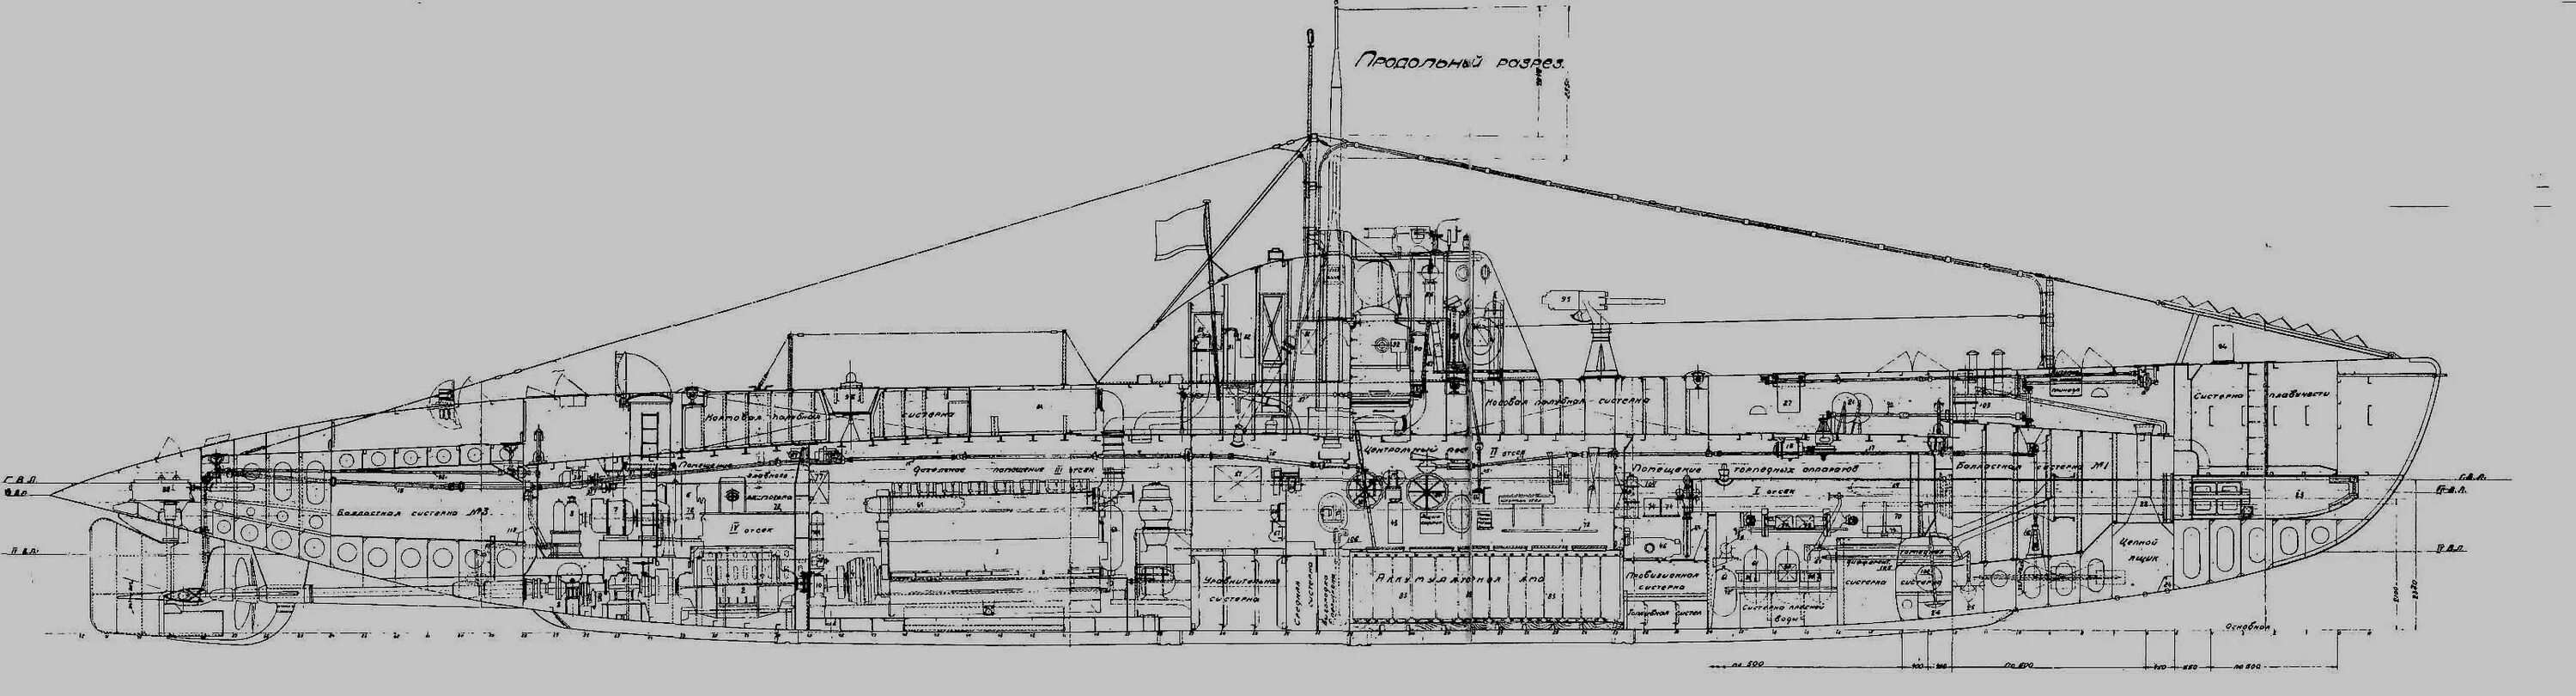 Тип м 19 10. Подводная лодка Малютка 1941-1945. Лодка типа м Малютка чертежи. Подводная лодка типа Малютка. Чертежи подлодки типа Малютка.